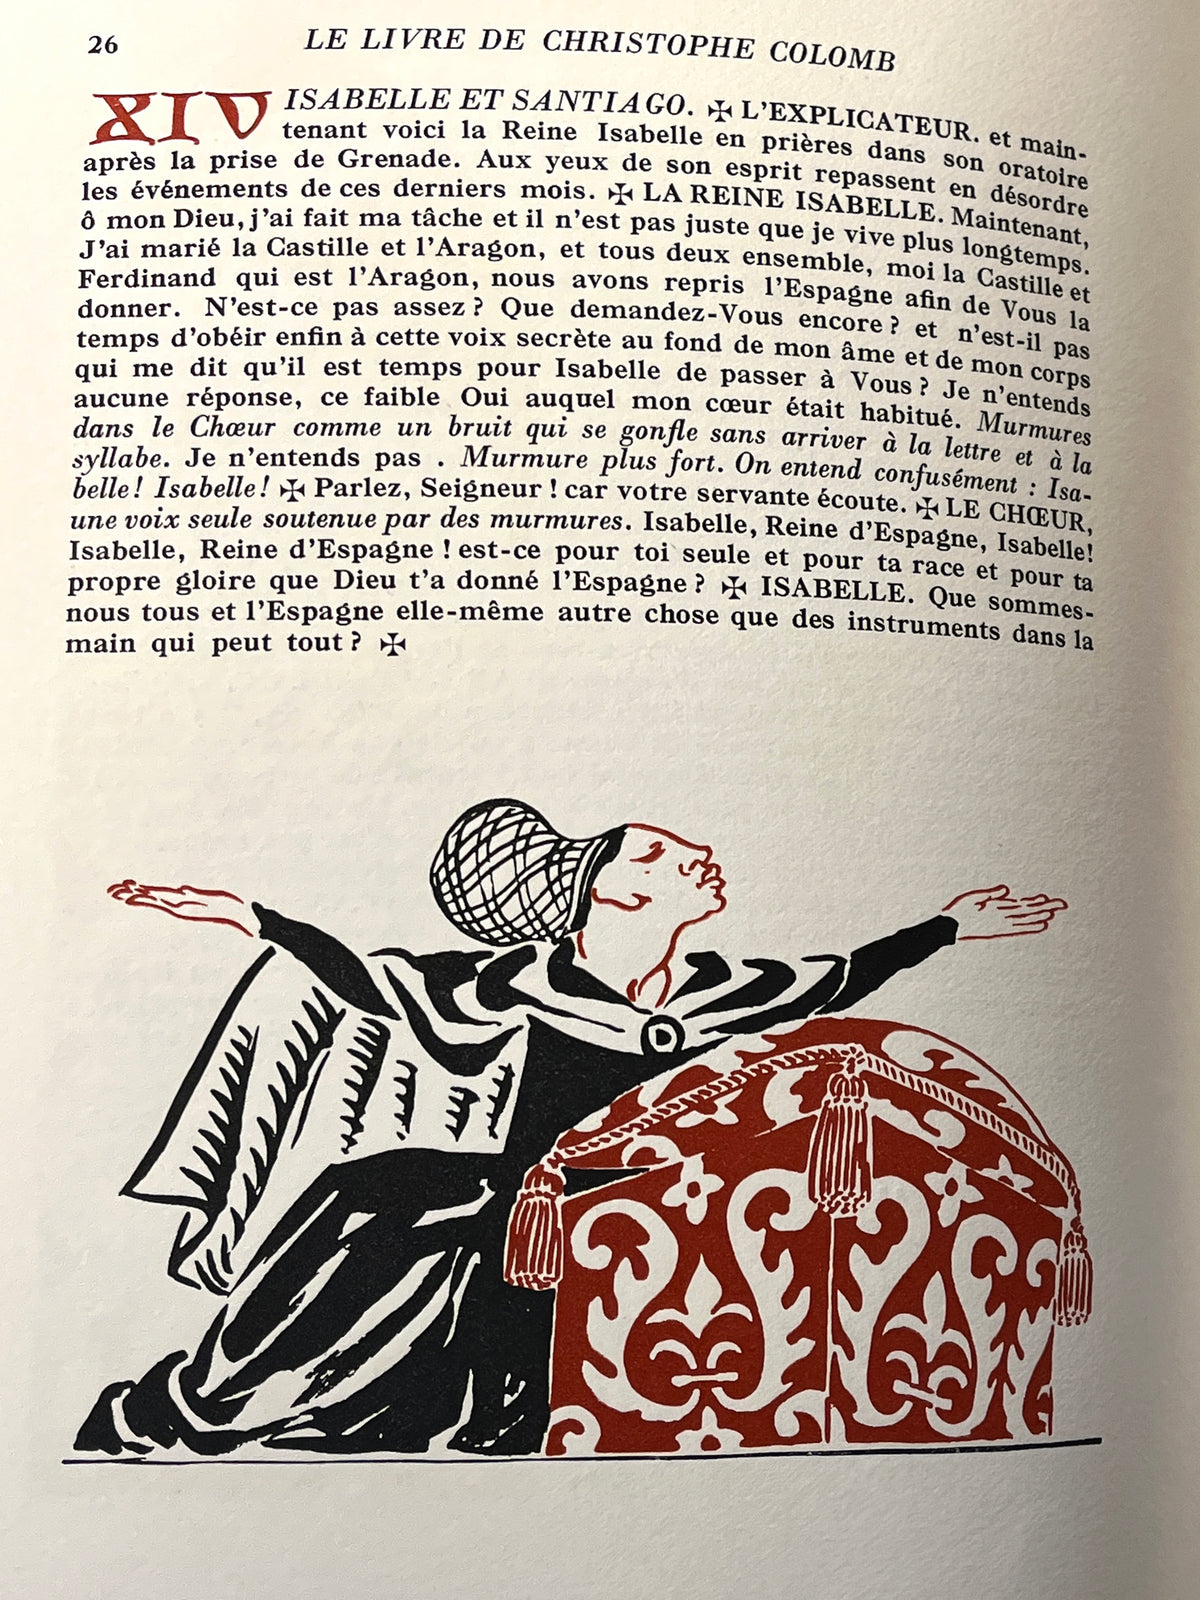 Le Livre de Christophe Colomb: Drame …, Librairie Gallimard, 43/800, Near Fine